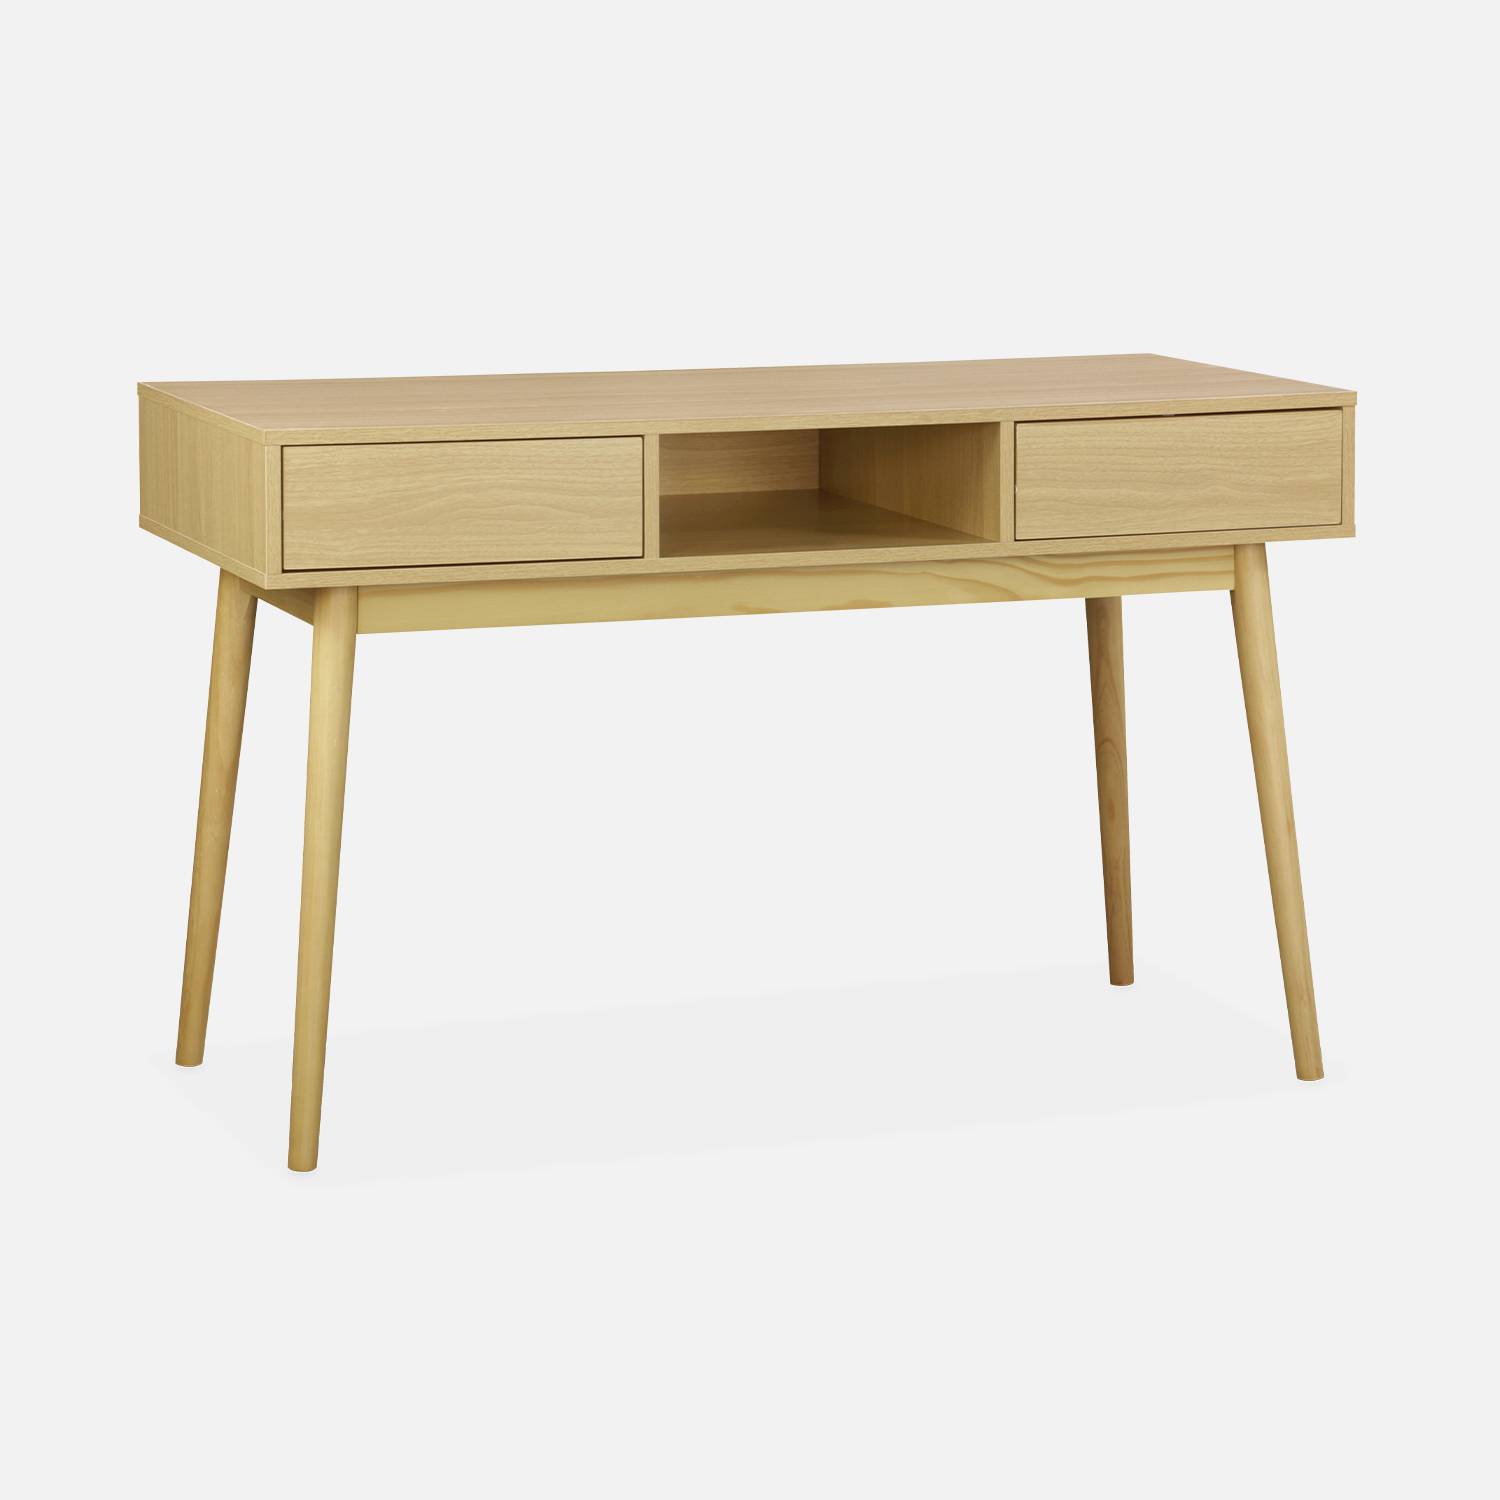 Console décor bois - Mika - 2 tiroirs, 1 casier de rangement, pieds scandinaves, L 120 x l 48 x H 75cm  Photo2